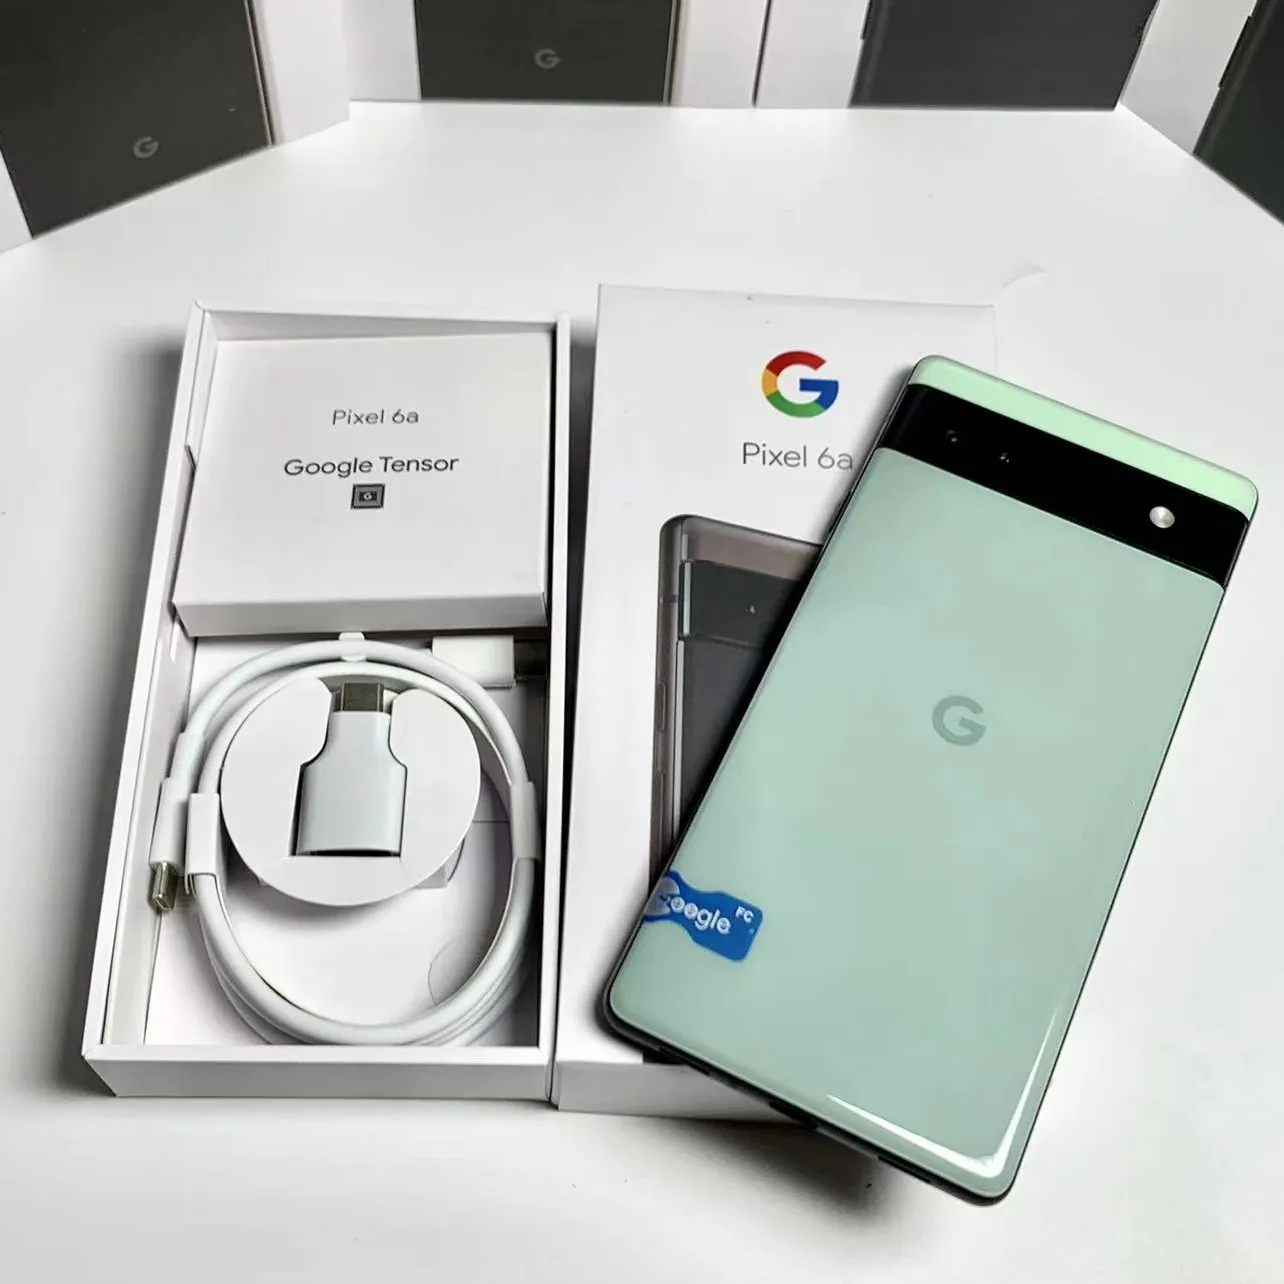 Google Pixel 6a 6 pro ओरिजिनल ब्रांड न्यू अनलॉक्ड 6.4 इंच मोबाइल के लिए एंड्रॉइड फोन अनलॉक स्मार्टफोन